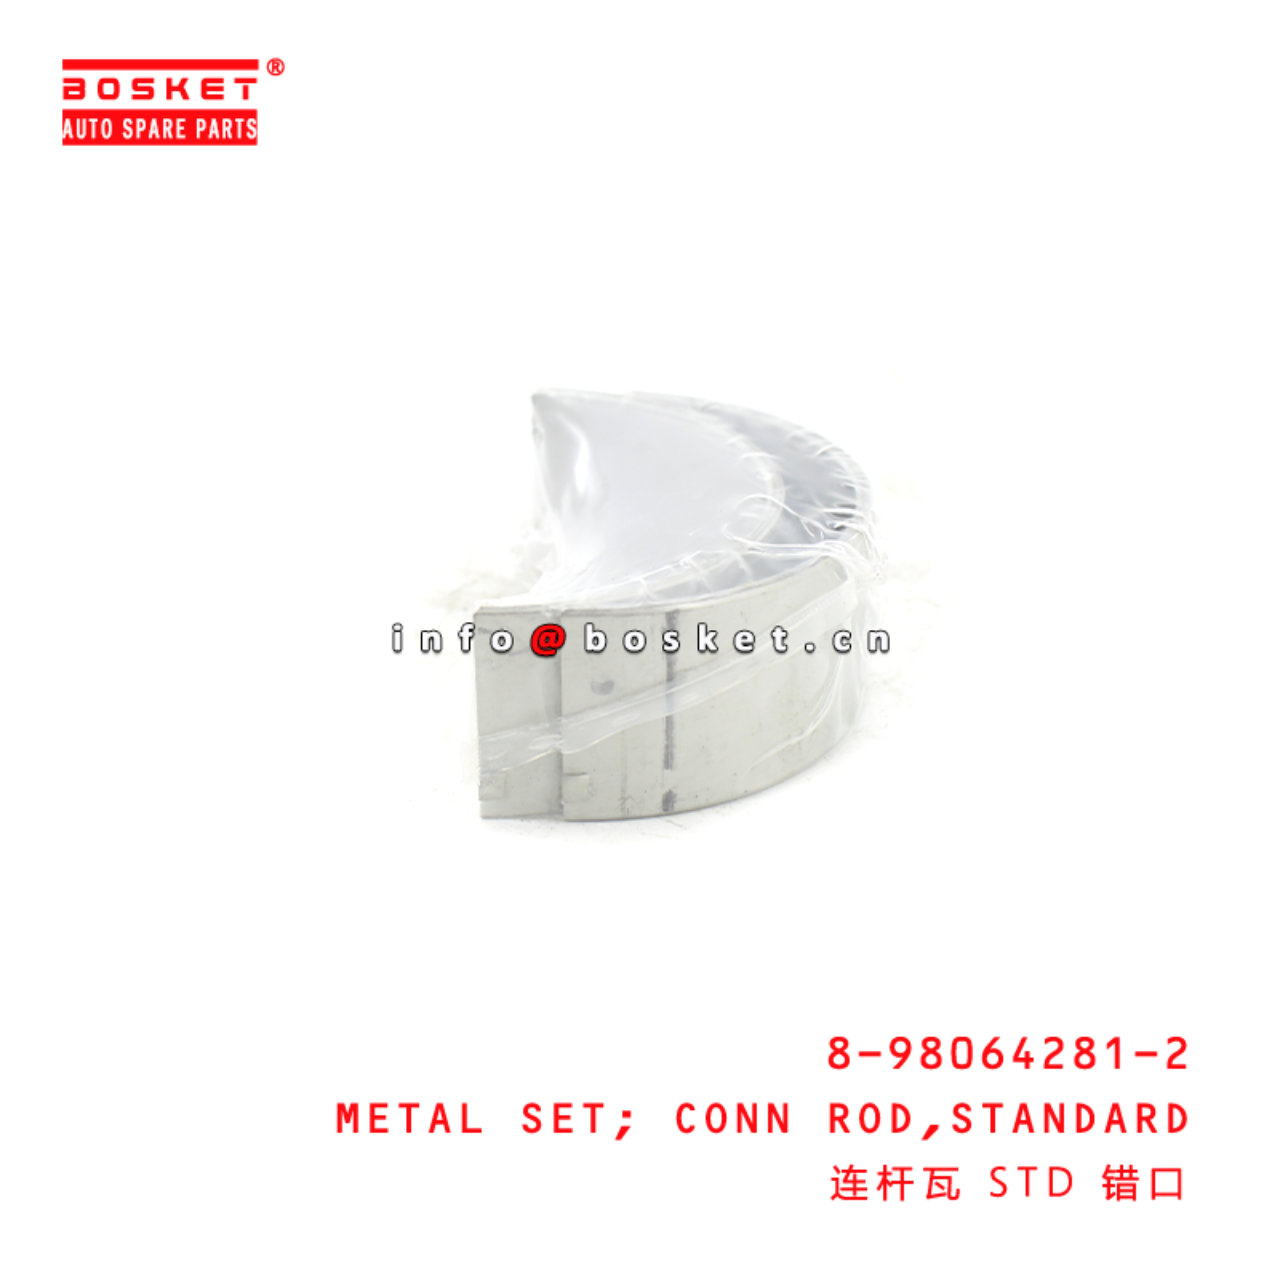 8-98064281-2 Standard Connecting Rod Metal Set Suitable for ISUZU FRR FSR FTR 4HK1 6HK1 8980642812